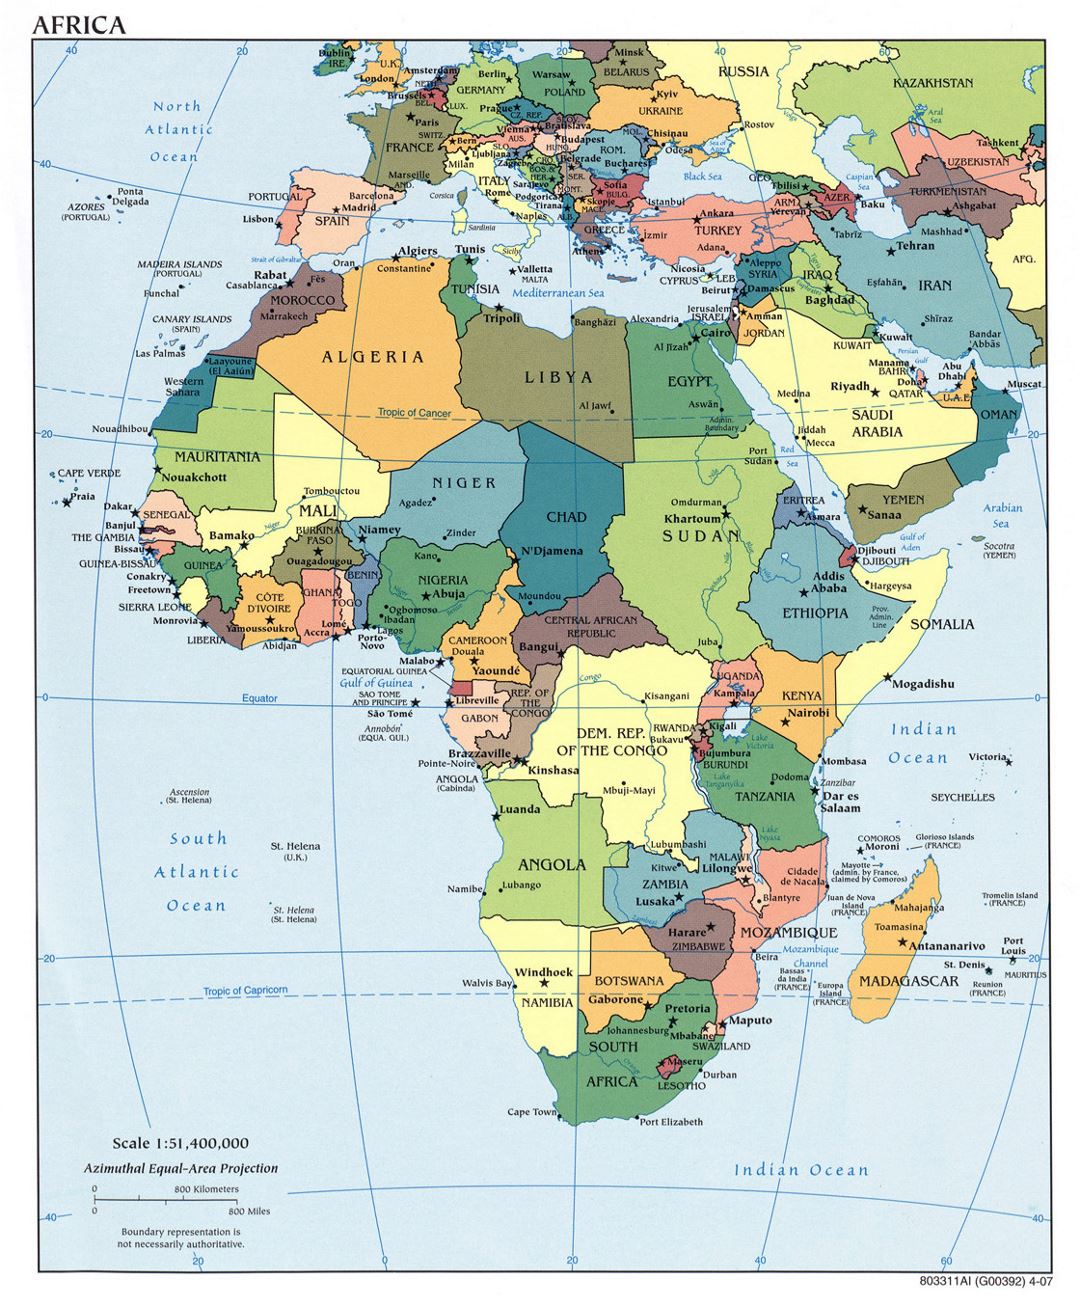 Mapa político detallada de África con las principales ciudades y capitales - 2007